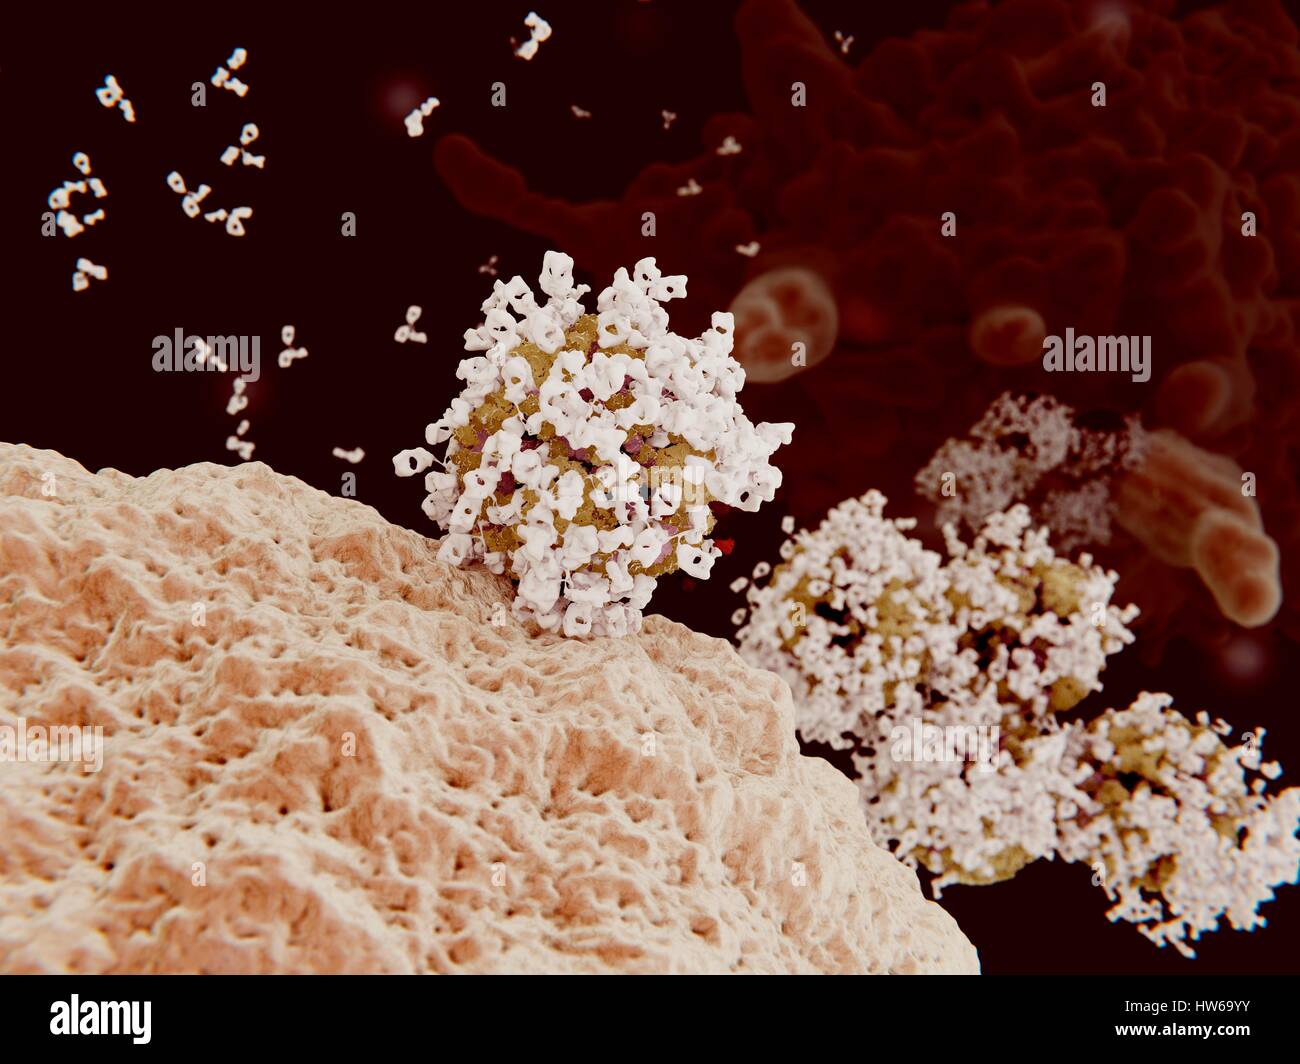 Computer Illustration von Influenza-Viren mit Antikörpern (weiß) beschichtet. Antikörper binden an spezifische Antigene, zum Beispiel virale Proteine, markiert sie für Zerstörung durch Phagozyten Immunzellen (im Hintergrund). Stockfoto